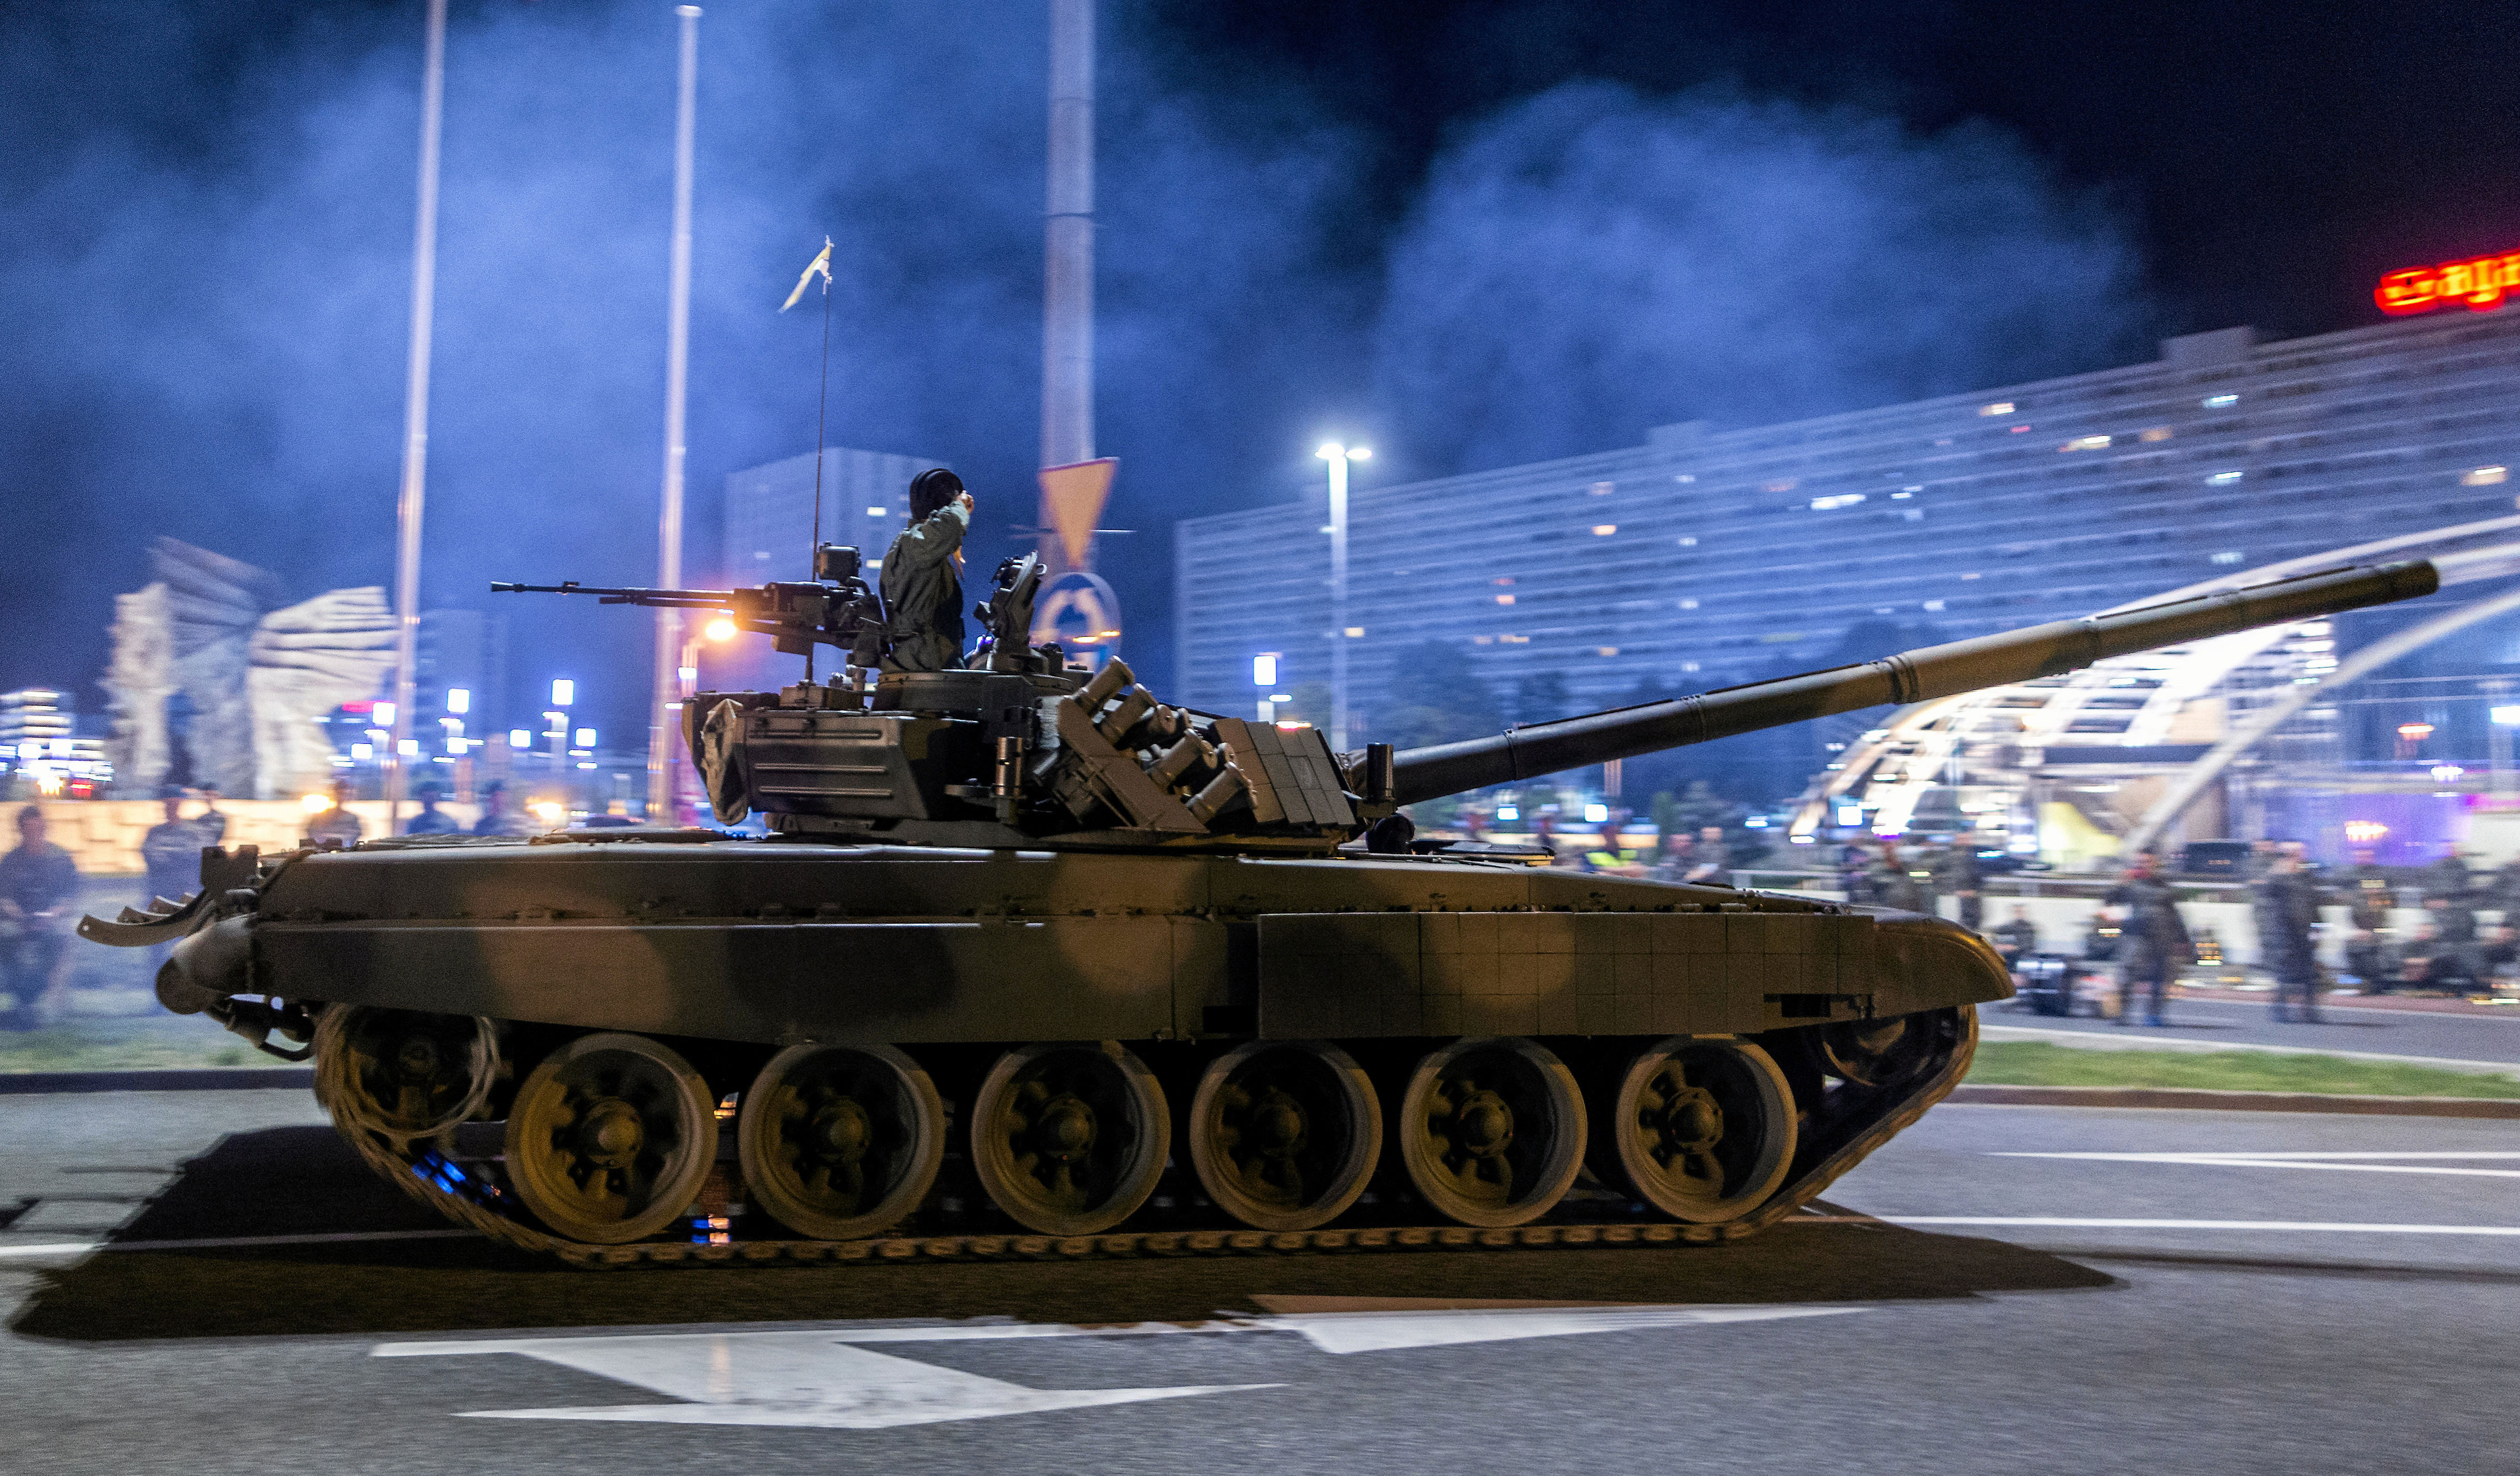 czołgi wyjechały na ulice, a wojsko apeluje o niepublikowanie zdjęć. co się dzieje?